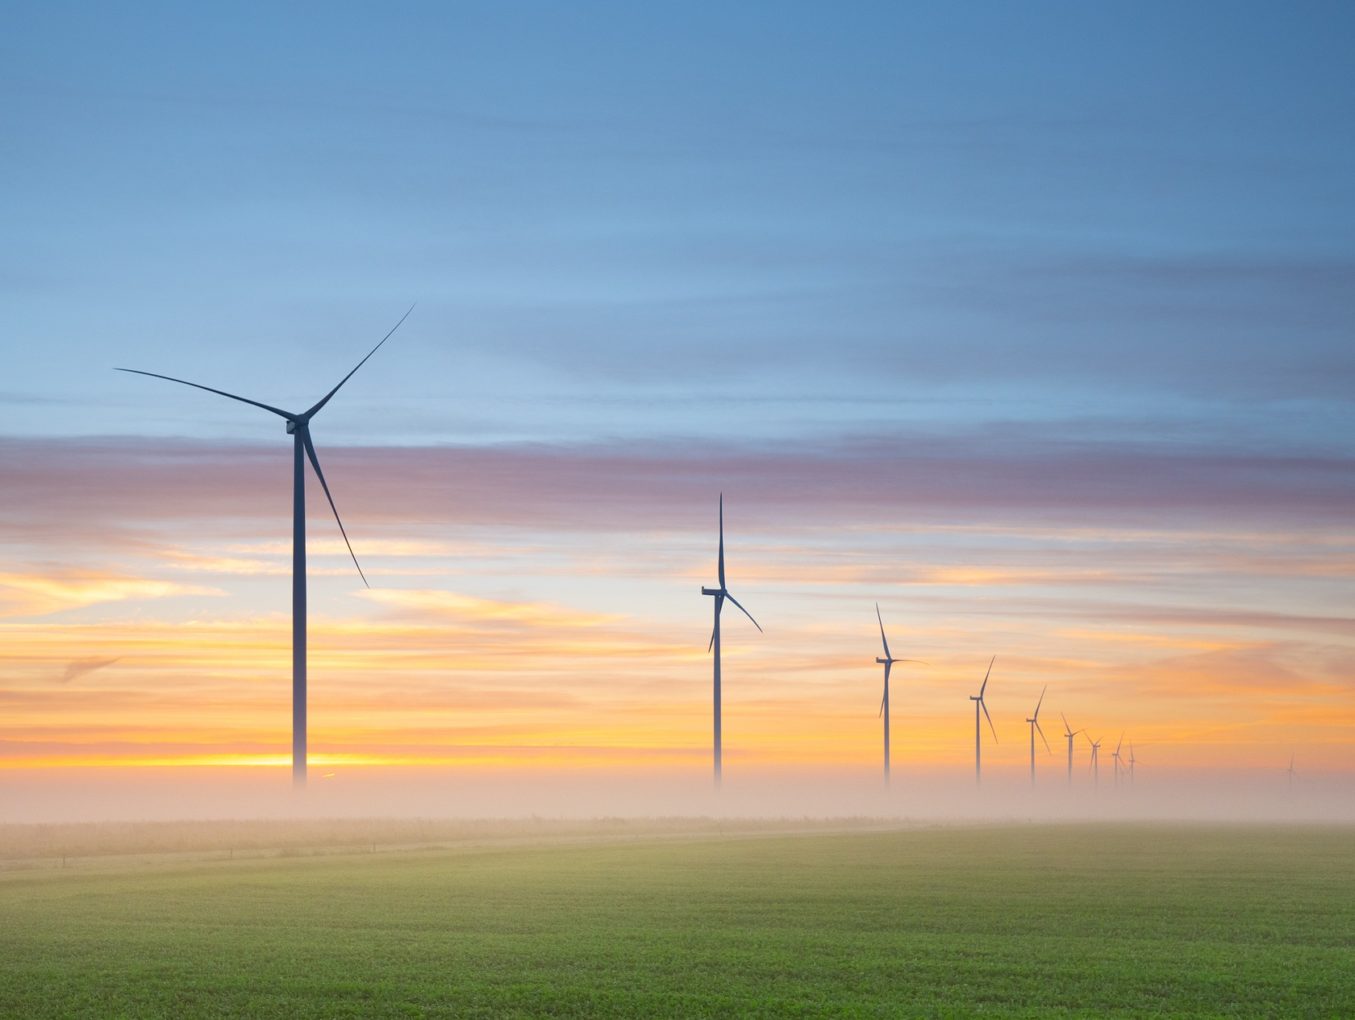 Europäische Union: Dringlichkeitsverordnung zum beschleunigten Ausbau von Erneuerbaren Energien